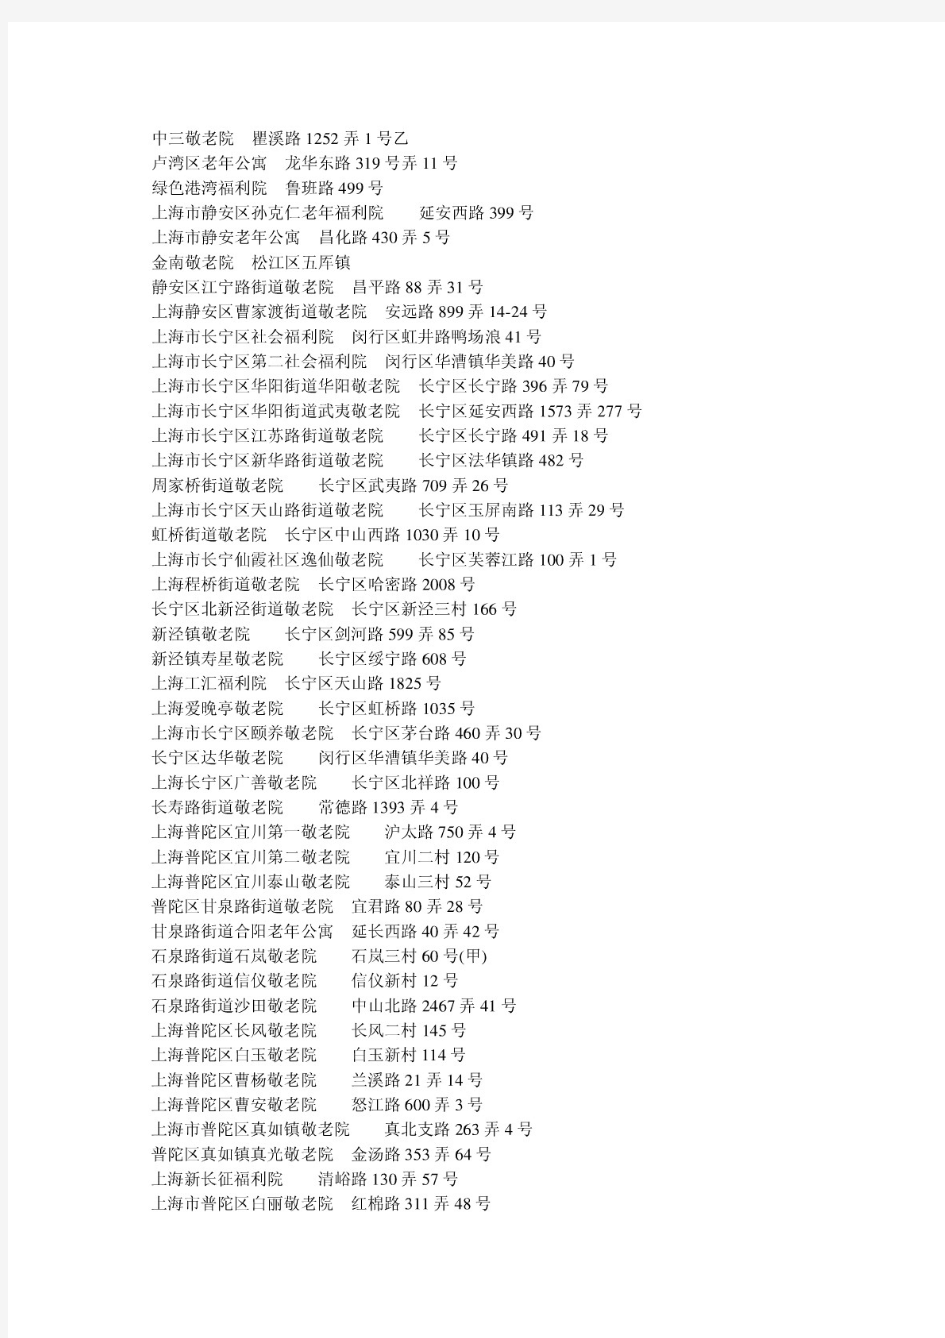 【精品】上海养老院一览表(最新版)